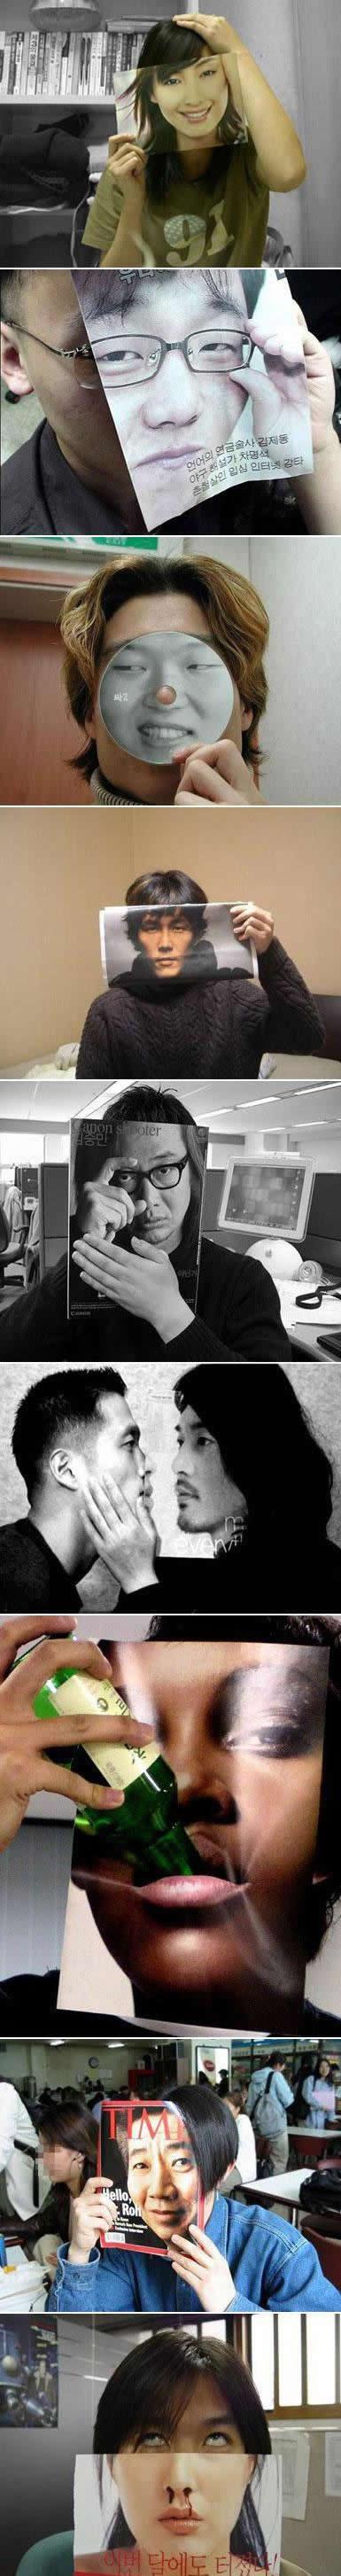 외국애들이 신기해 하는 한국의 엽기사진